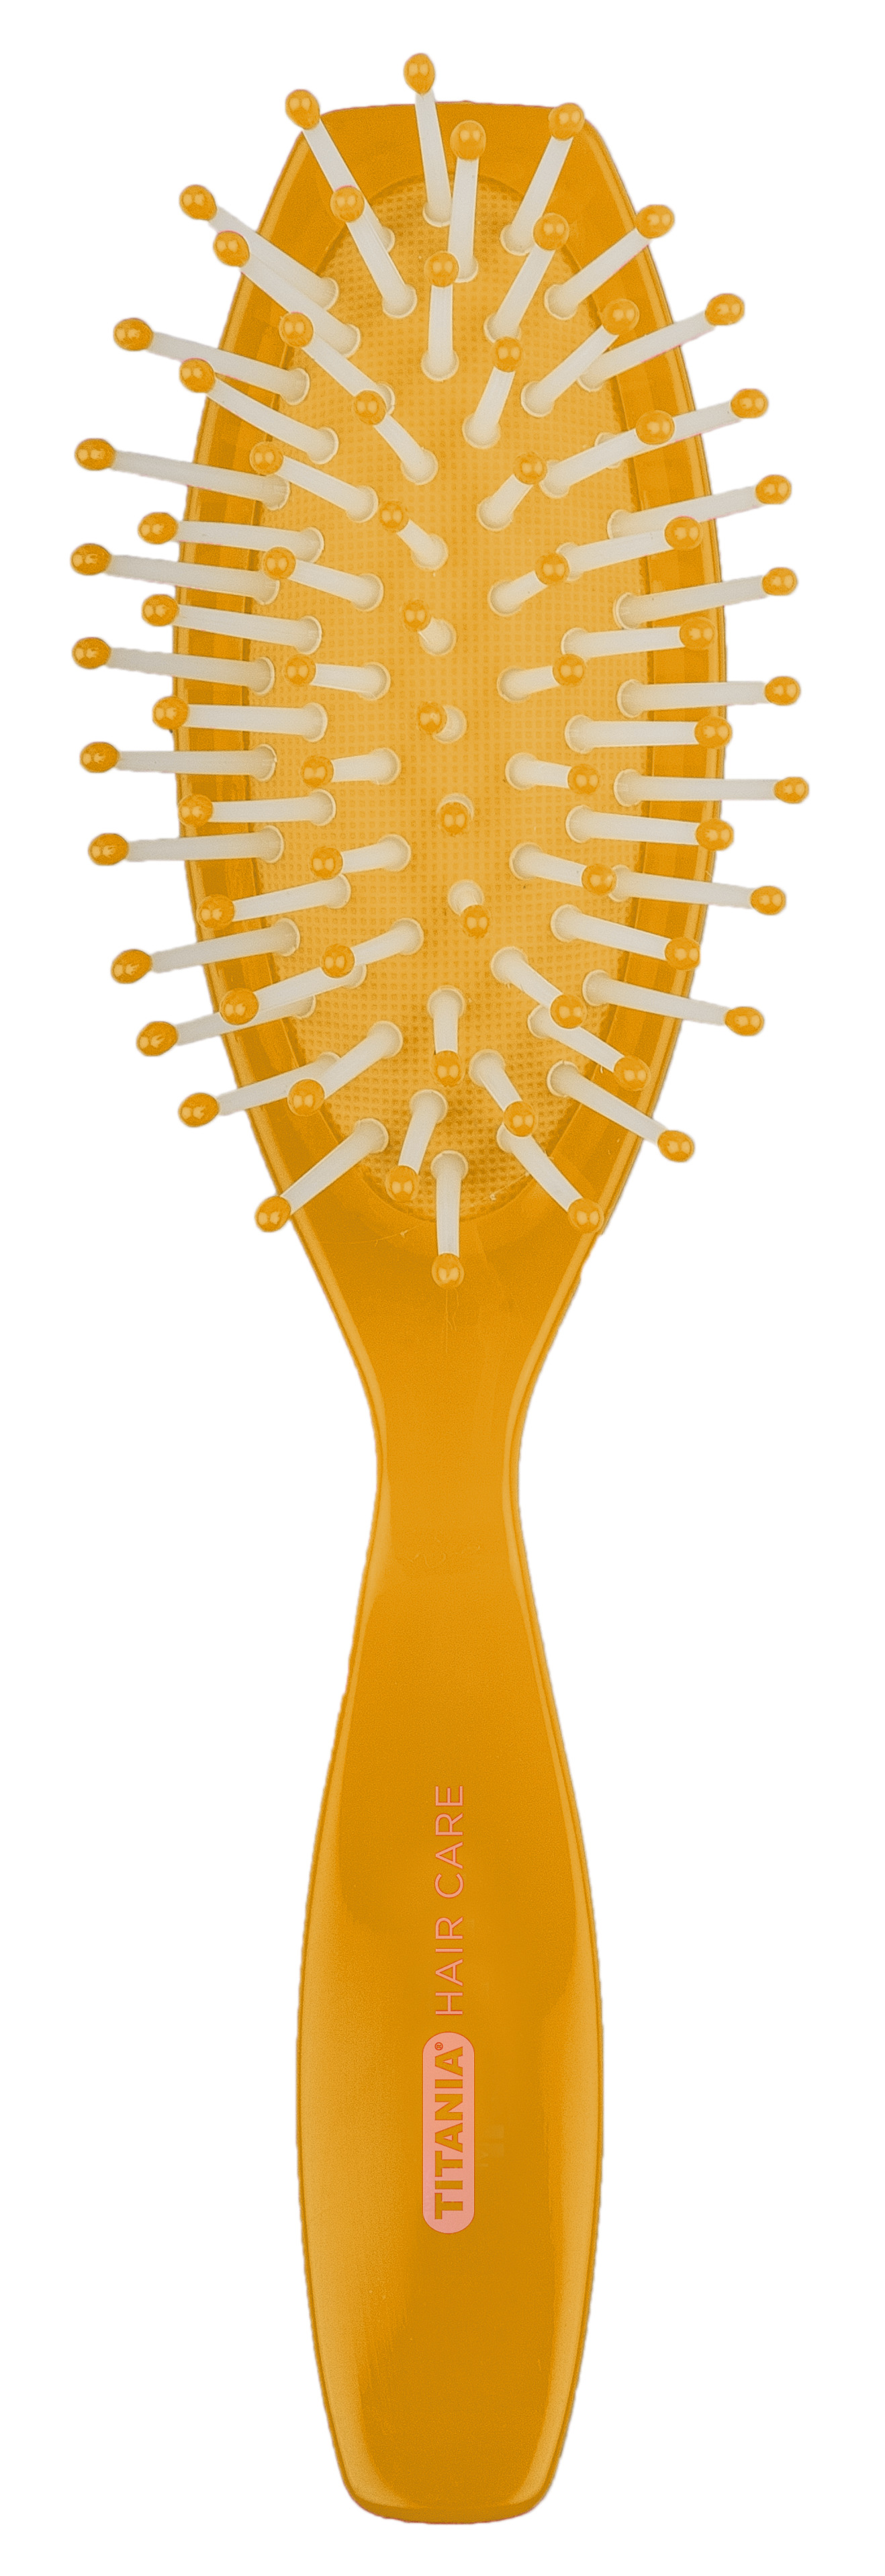 Щетка для волос Titania массажная, 7 рядов, оранжевый (1826 оранж) - фото 1